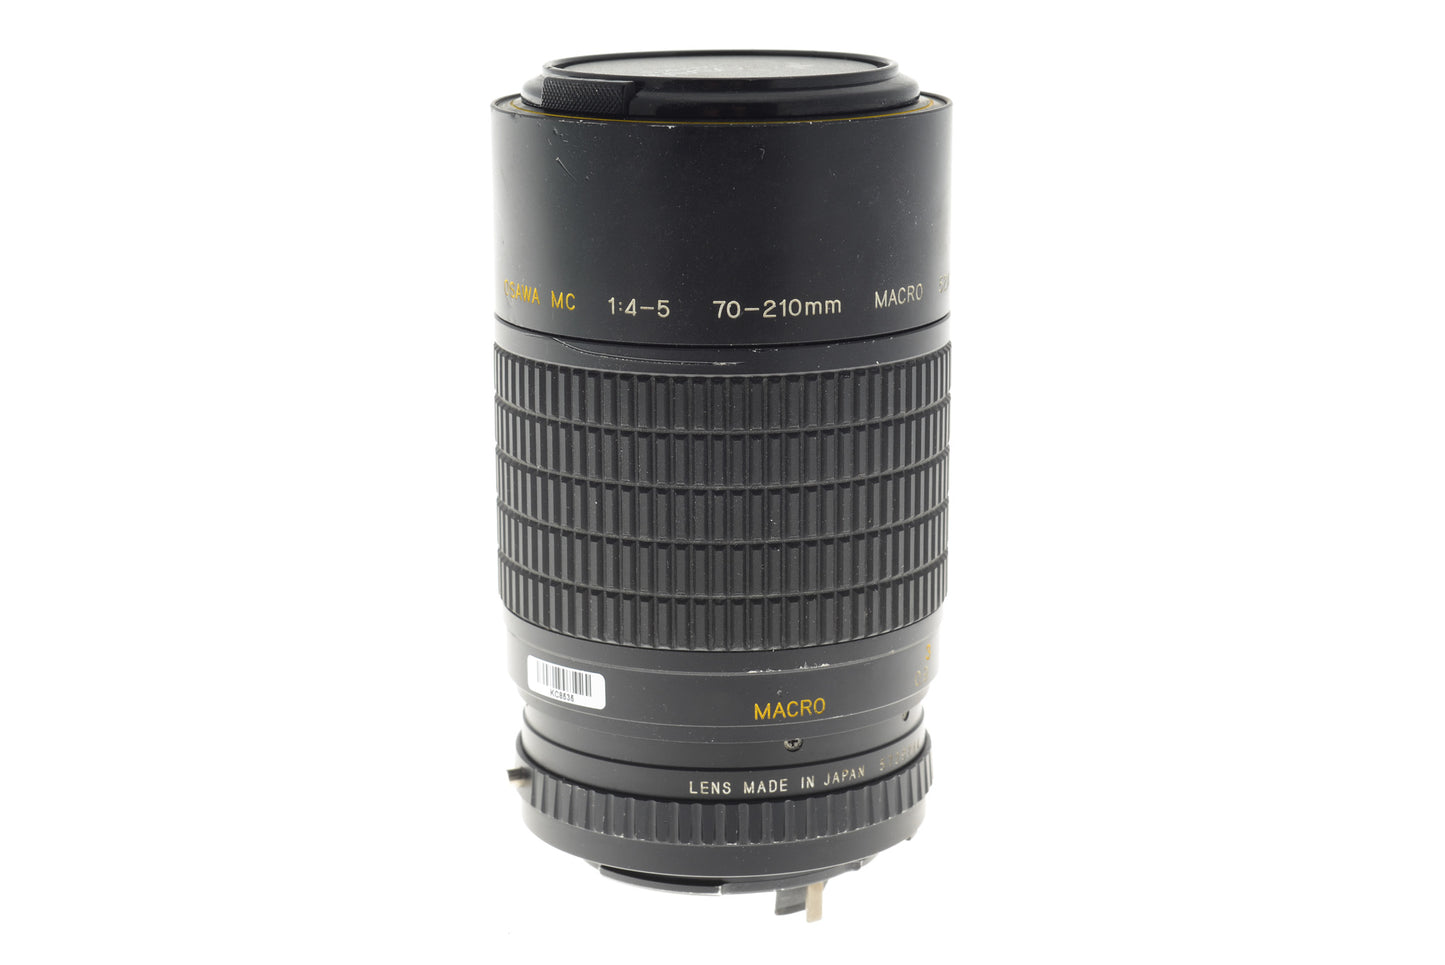 Osawa 70-210MM f4-5 MC Macro - Lens